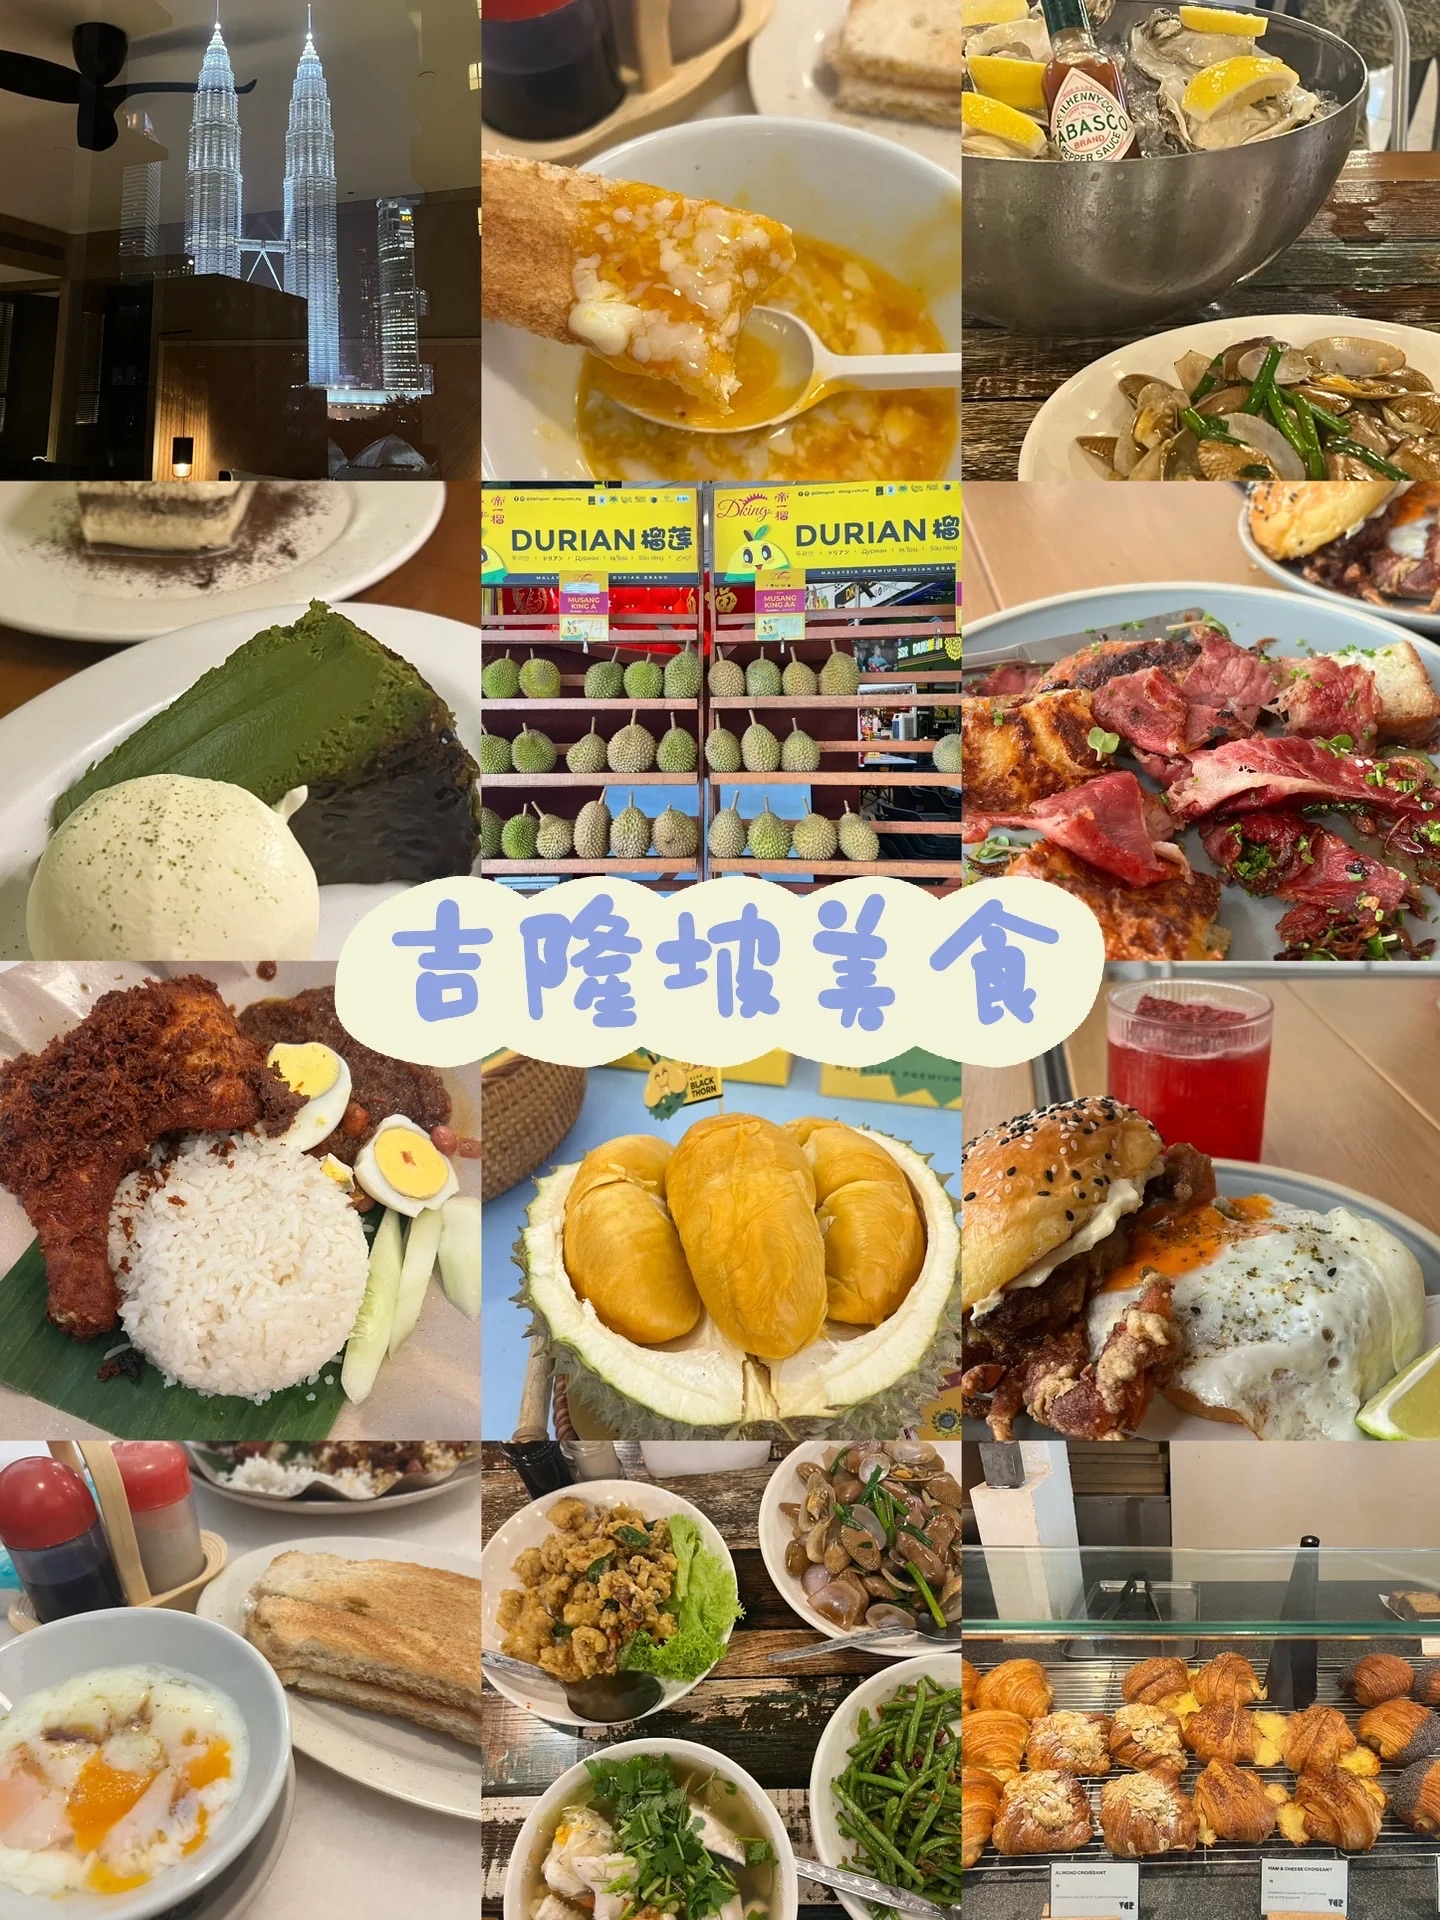 马来西亚免签啦吉隆坡美食合集 P2:Tokyo restaurant 提拉米苏+芝士蛋糕必点 鳗鱼卷